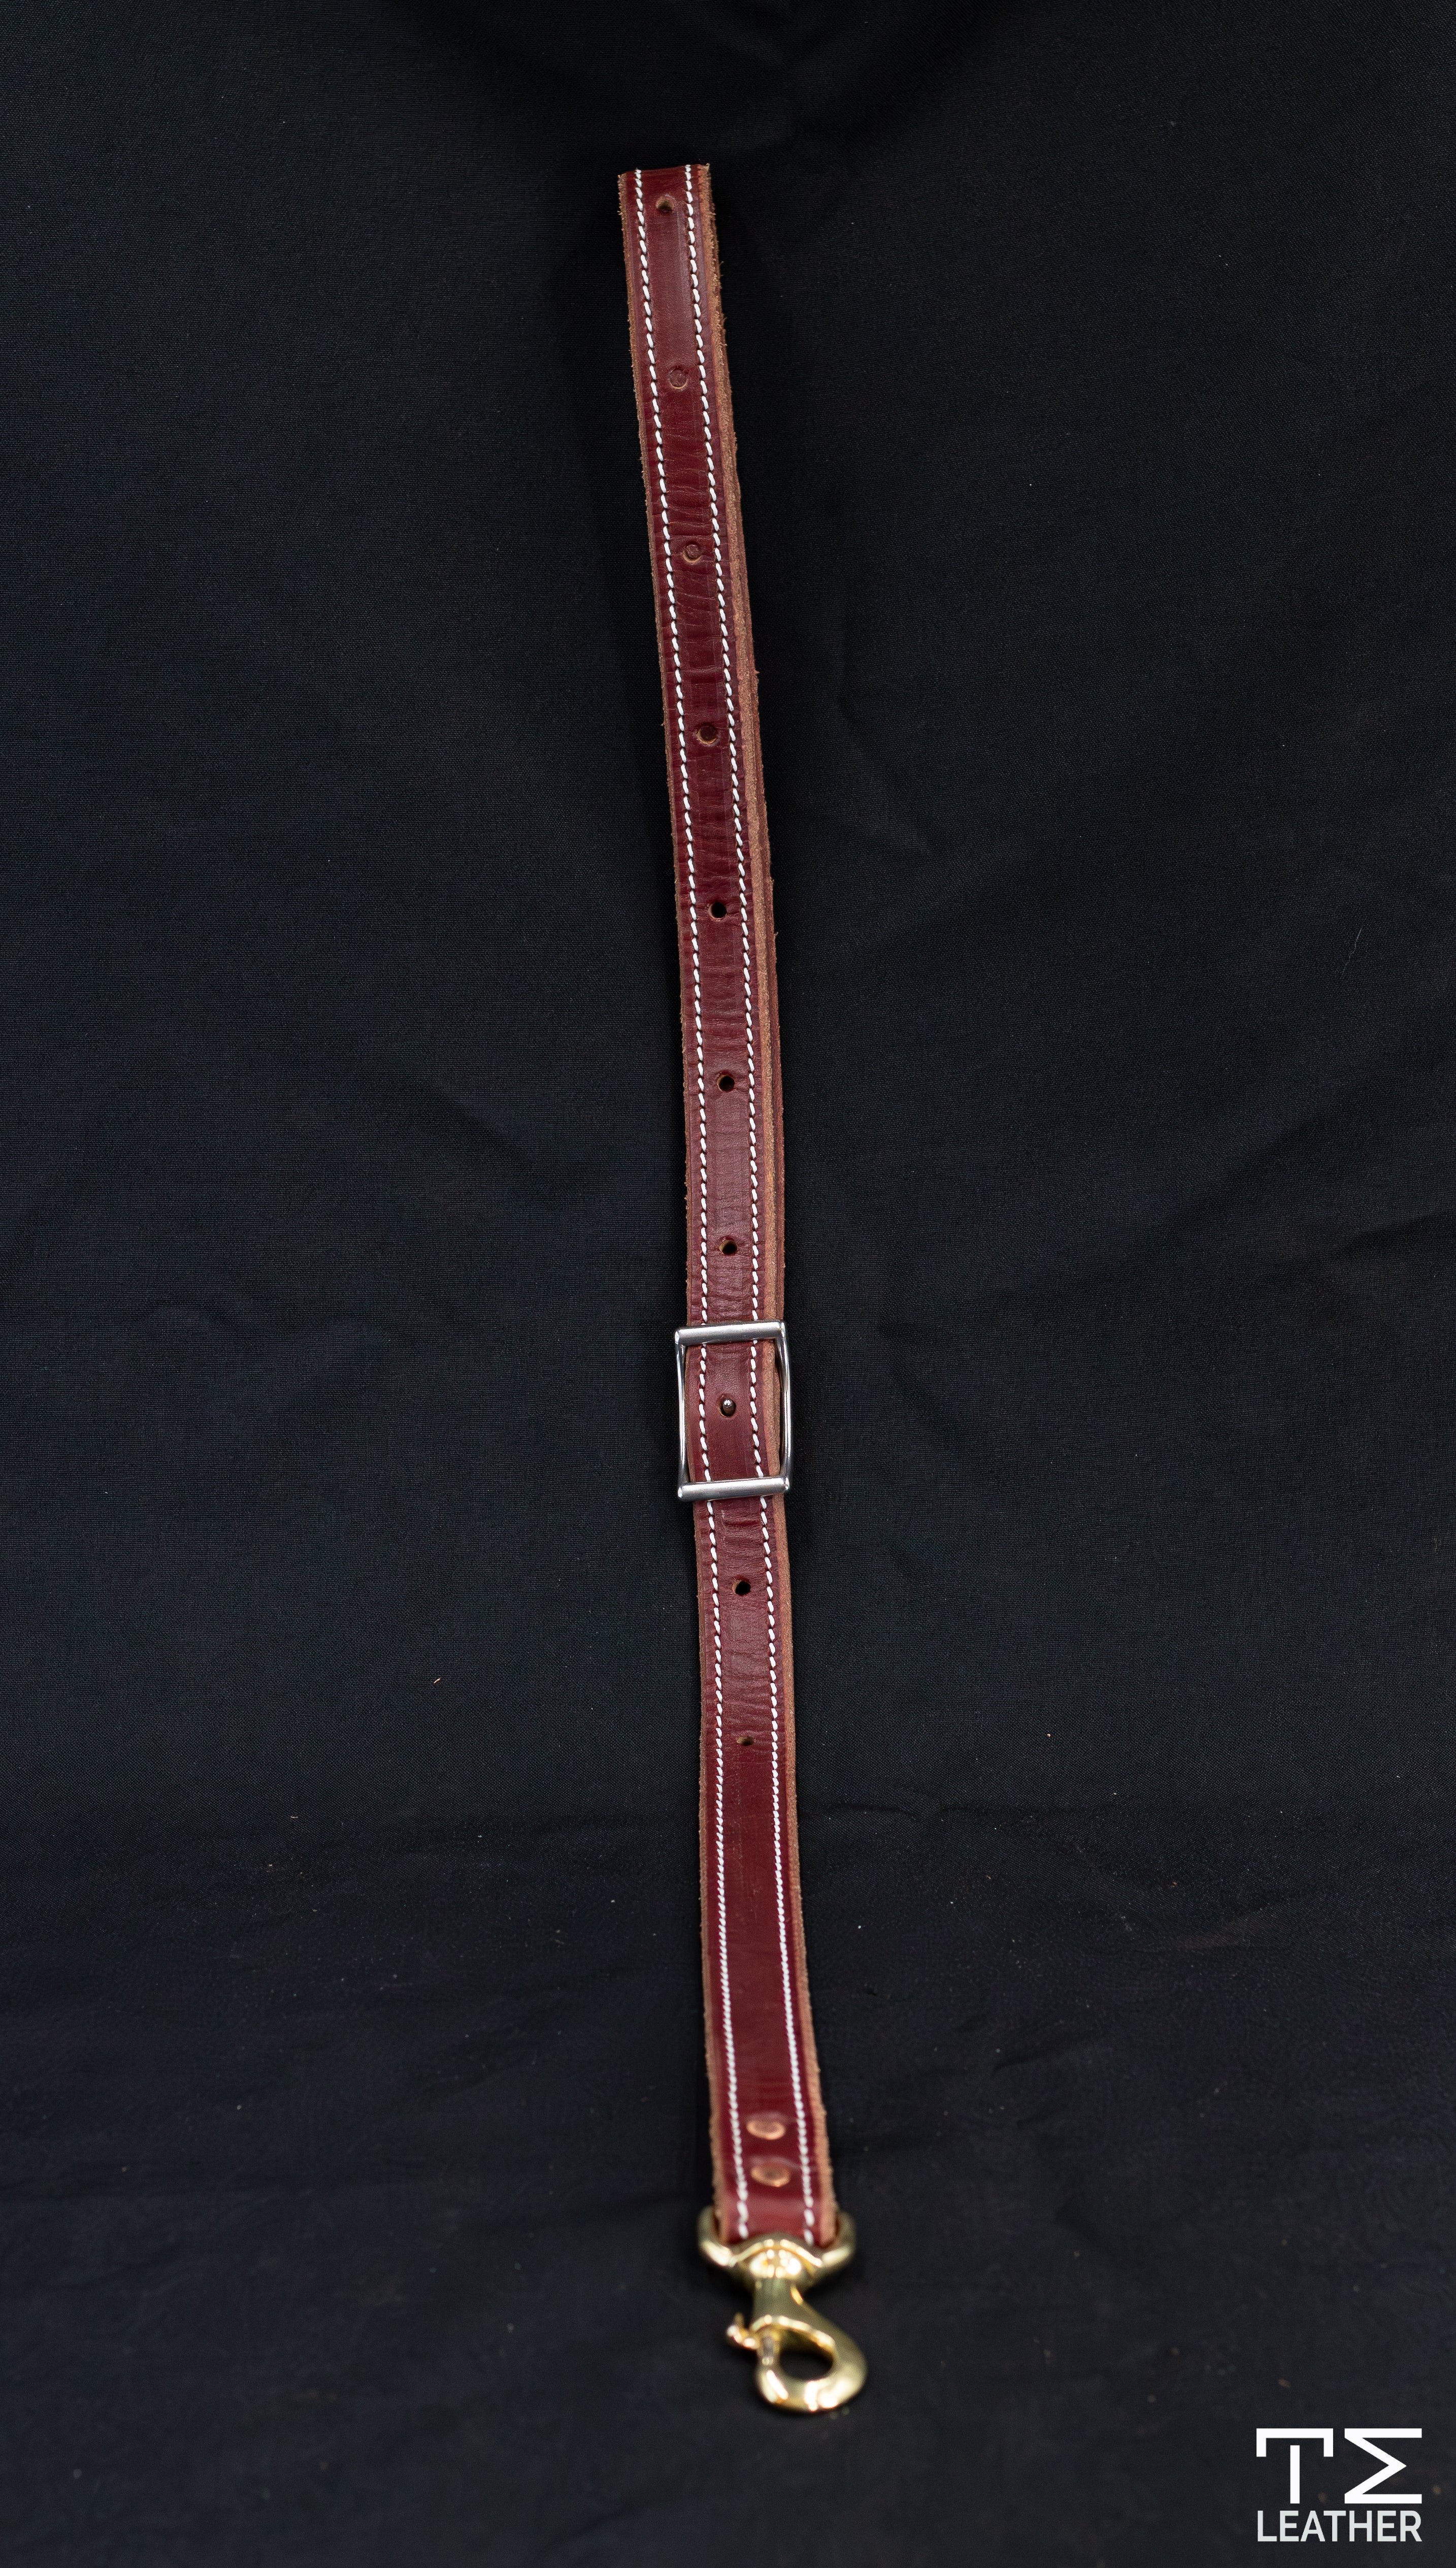 1" Stitched Latigo Leather Tie Down Strap with Brass Snaps